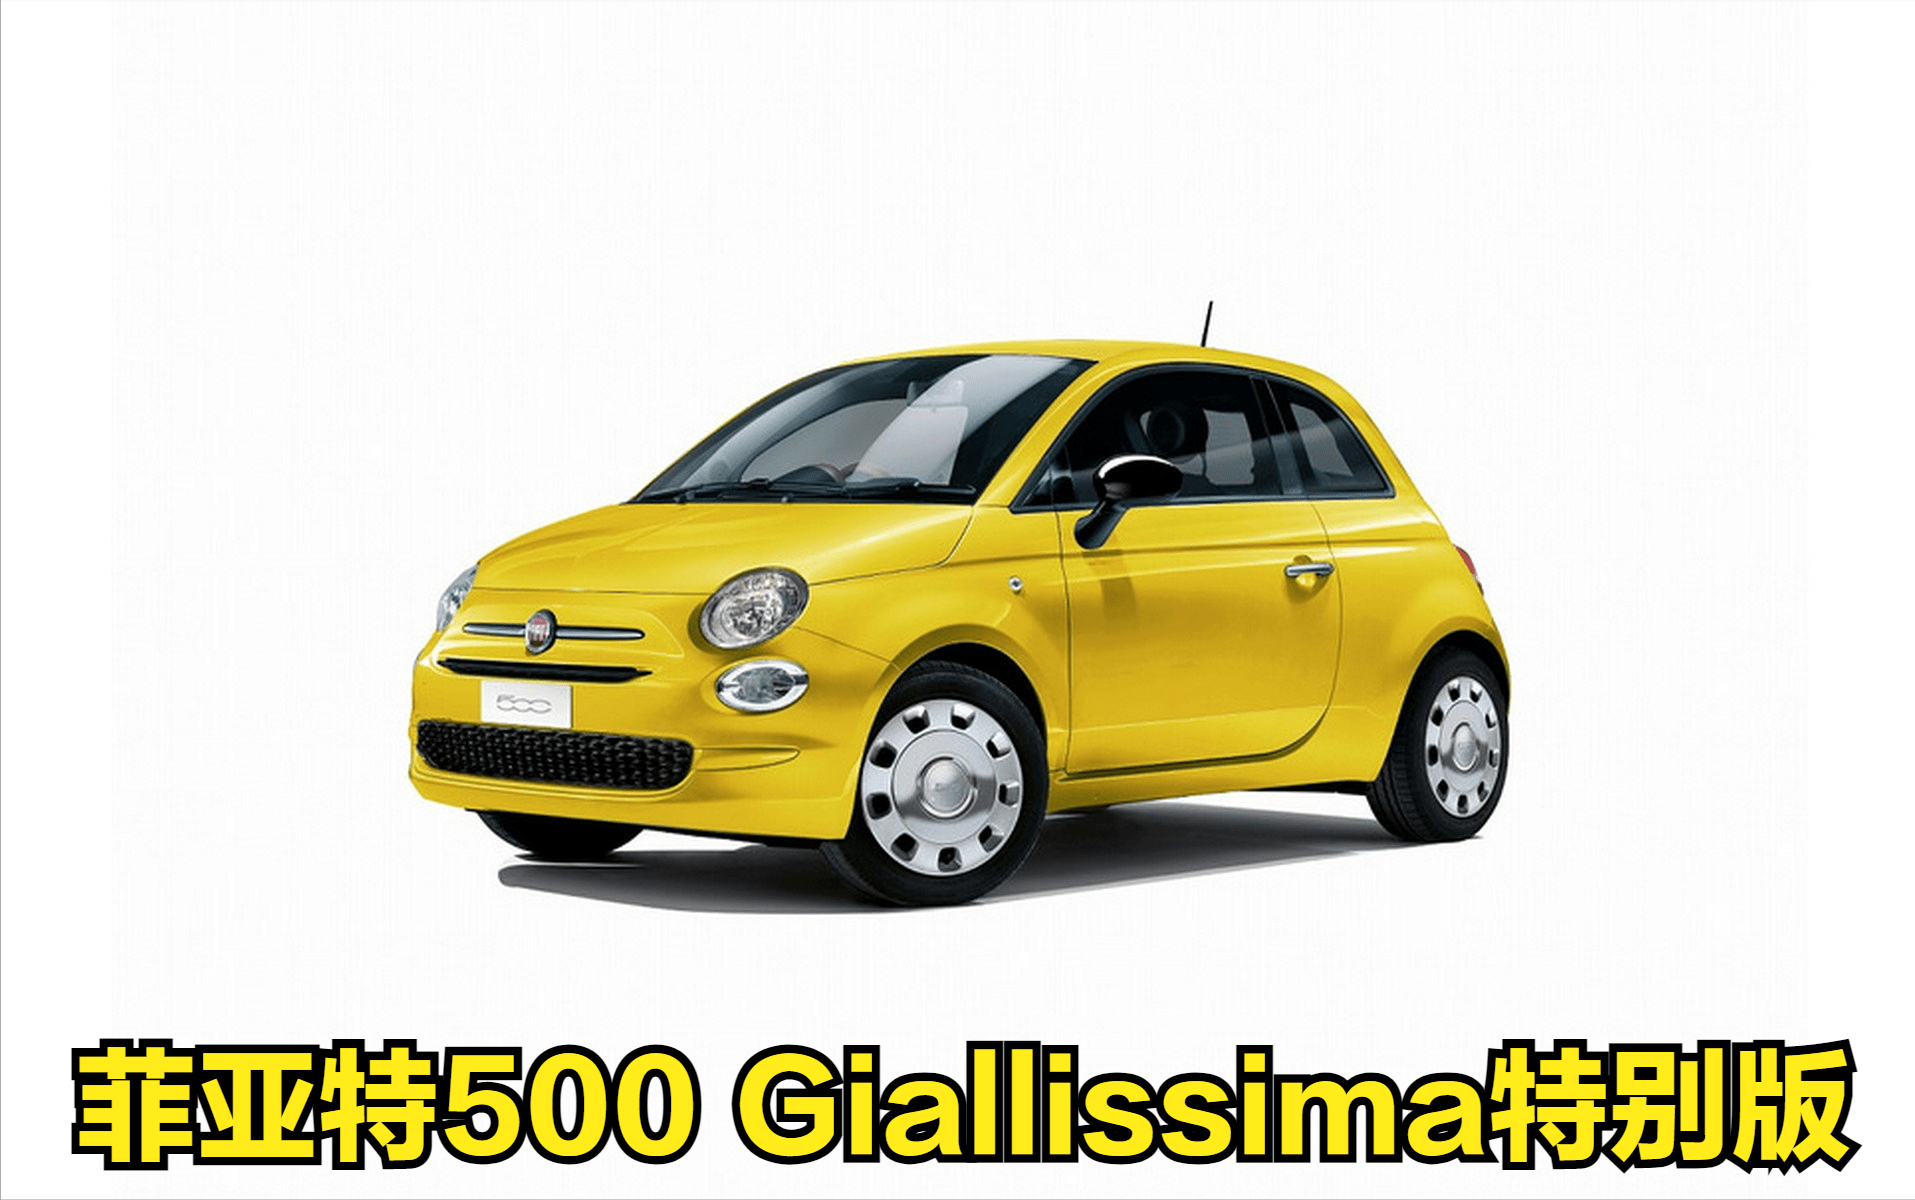 原创菲亚特500giallissima特别版即将上市售价约合人民币128万元限量